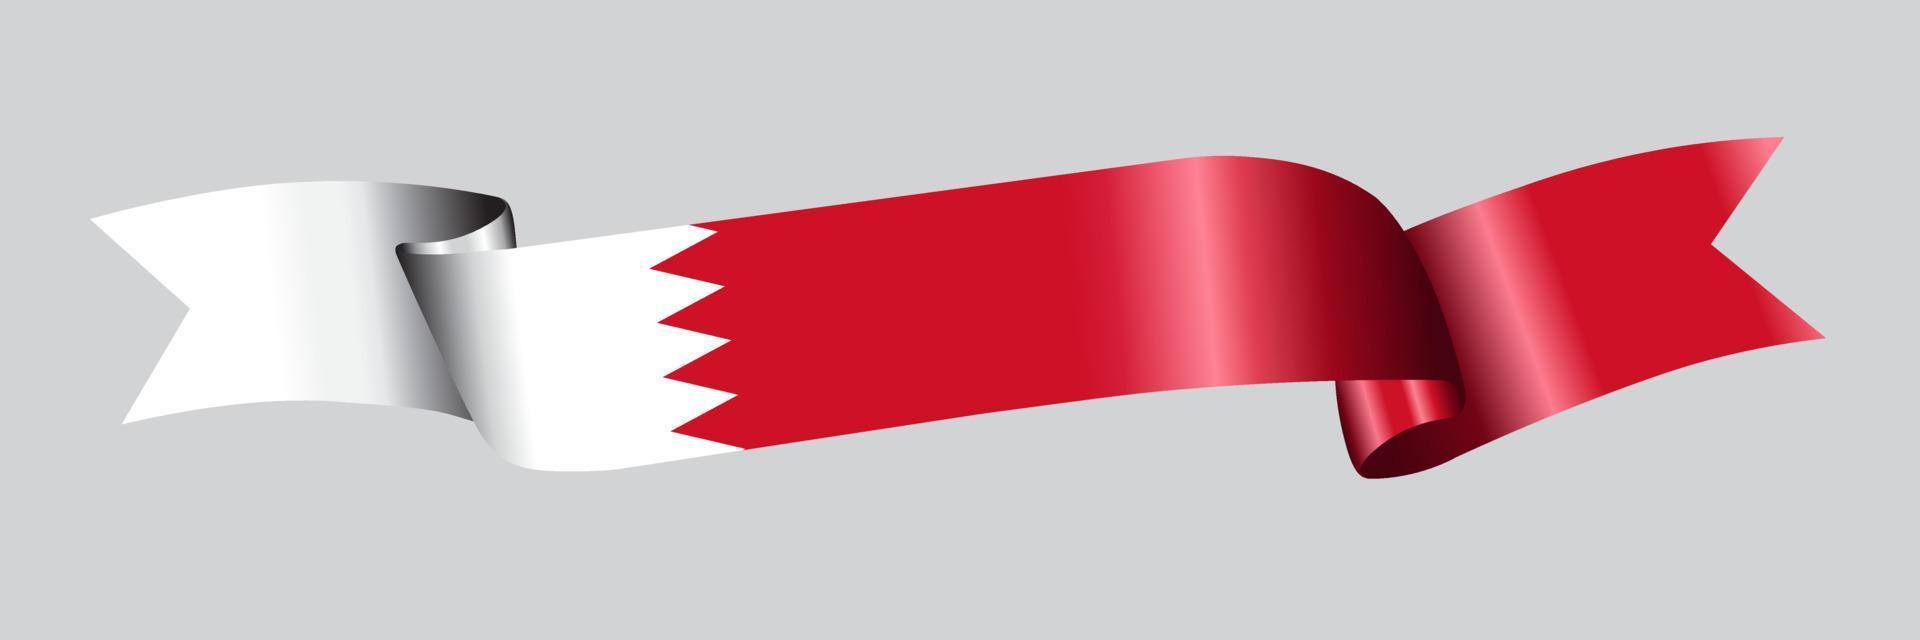 Bandeira 3D do Bahrein na faixa de opções. vetor